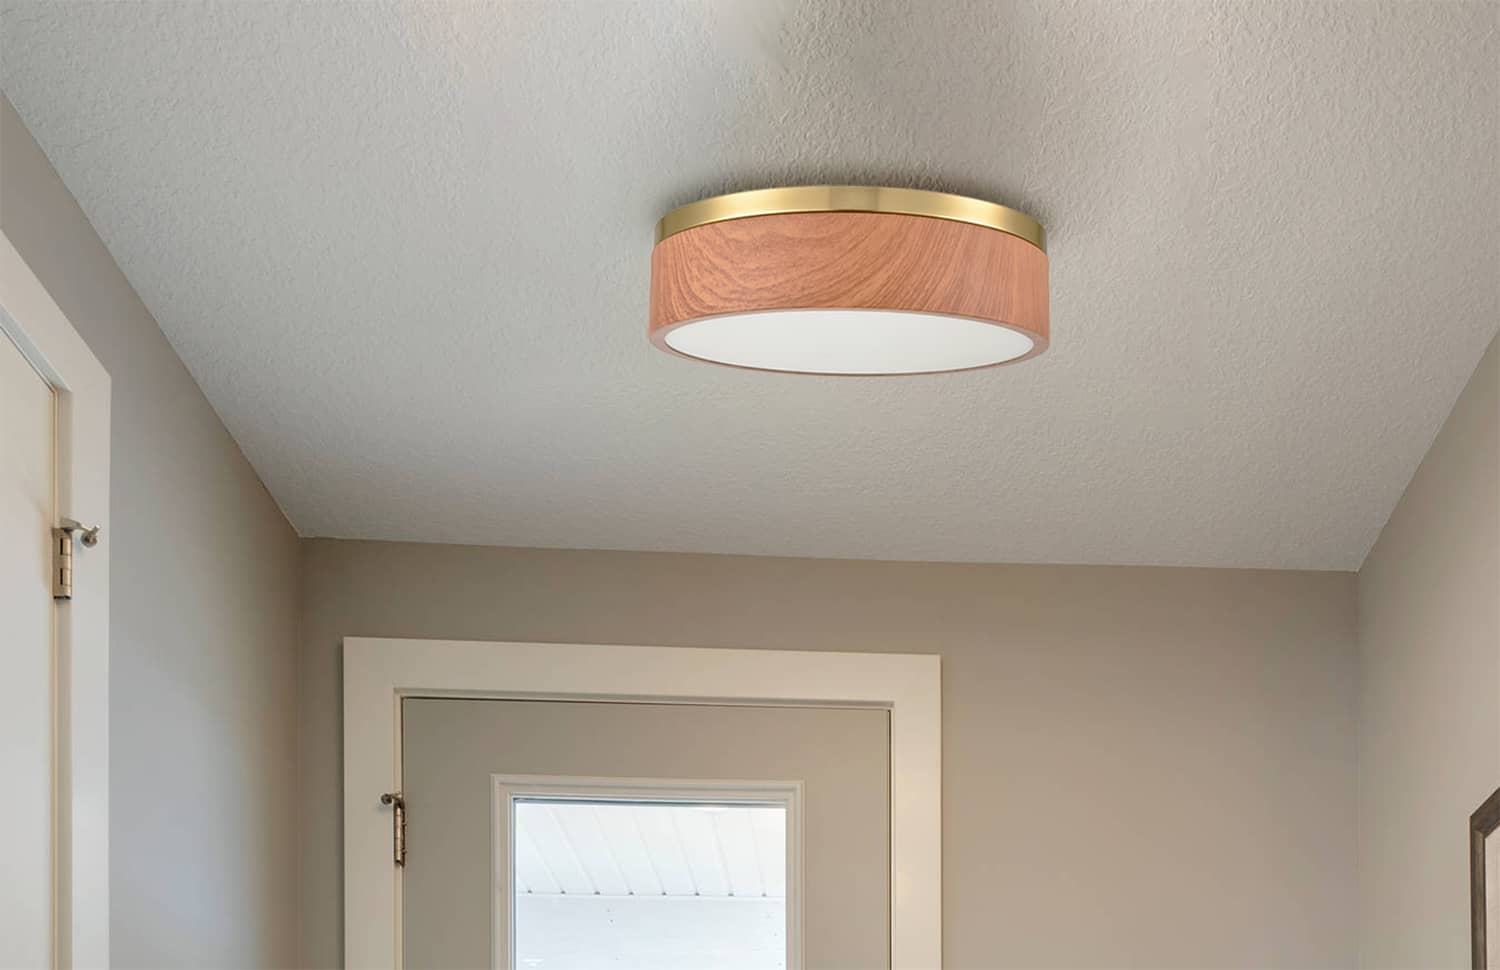 Modern Brass LED Flush Mount Ceiling Light Wood Grain Round Light